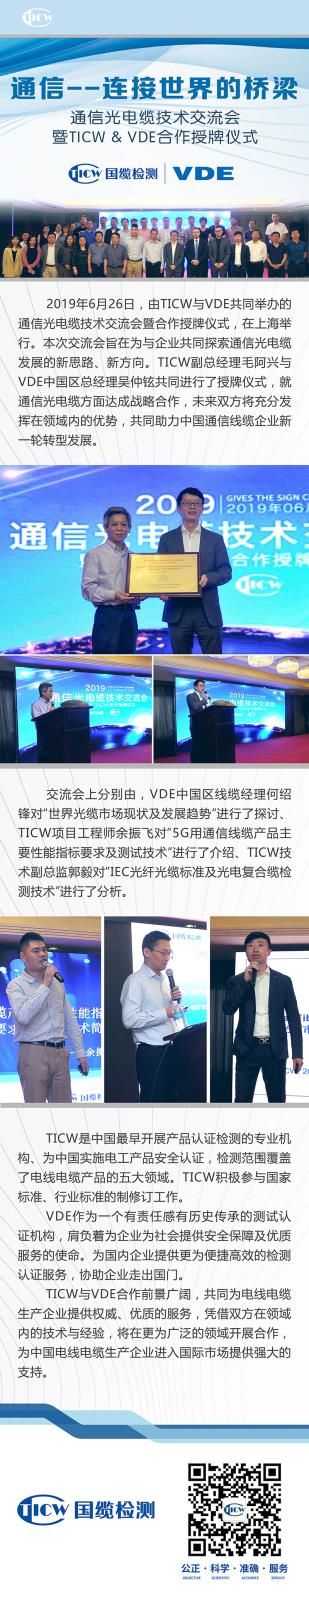 07 通信光电缆技术交流会 暨TICW&VDE合作授牌仪式.jpg